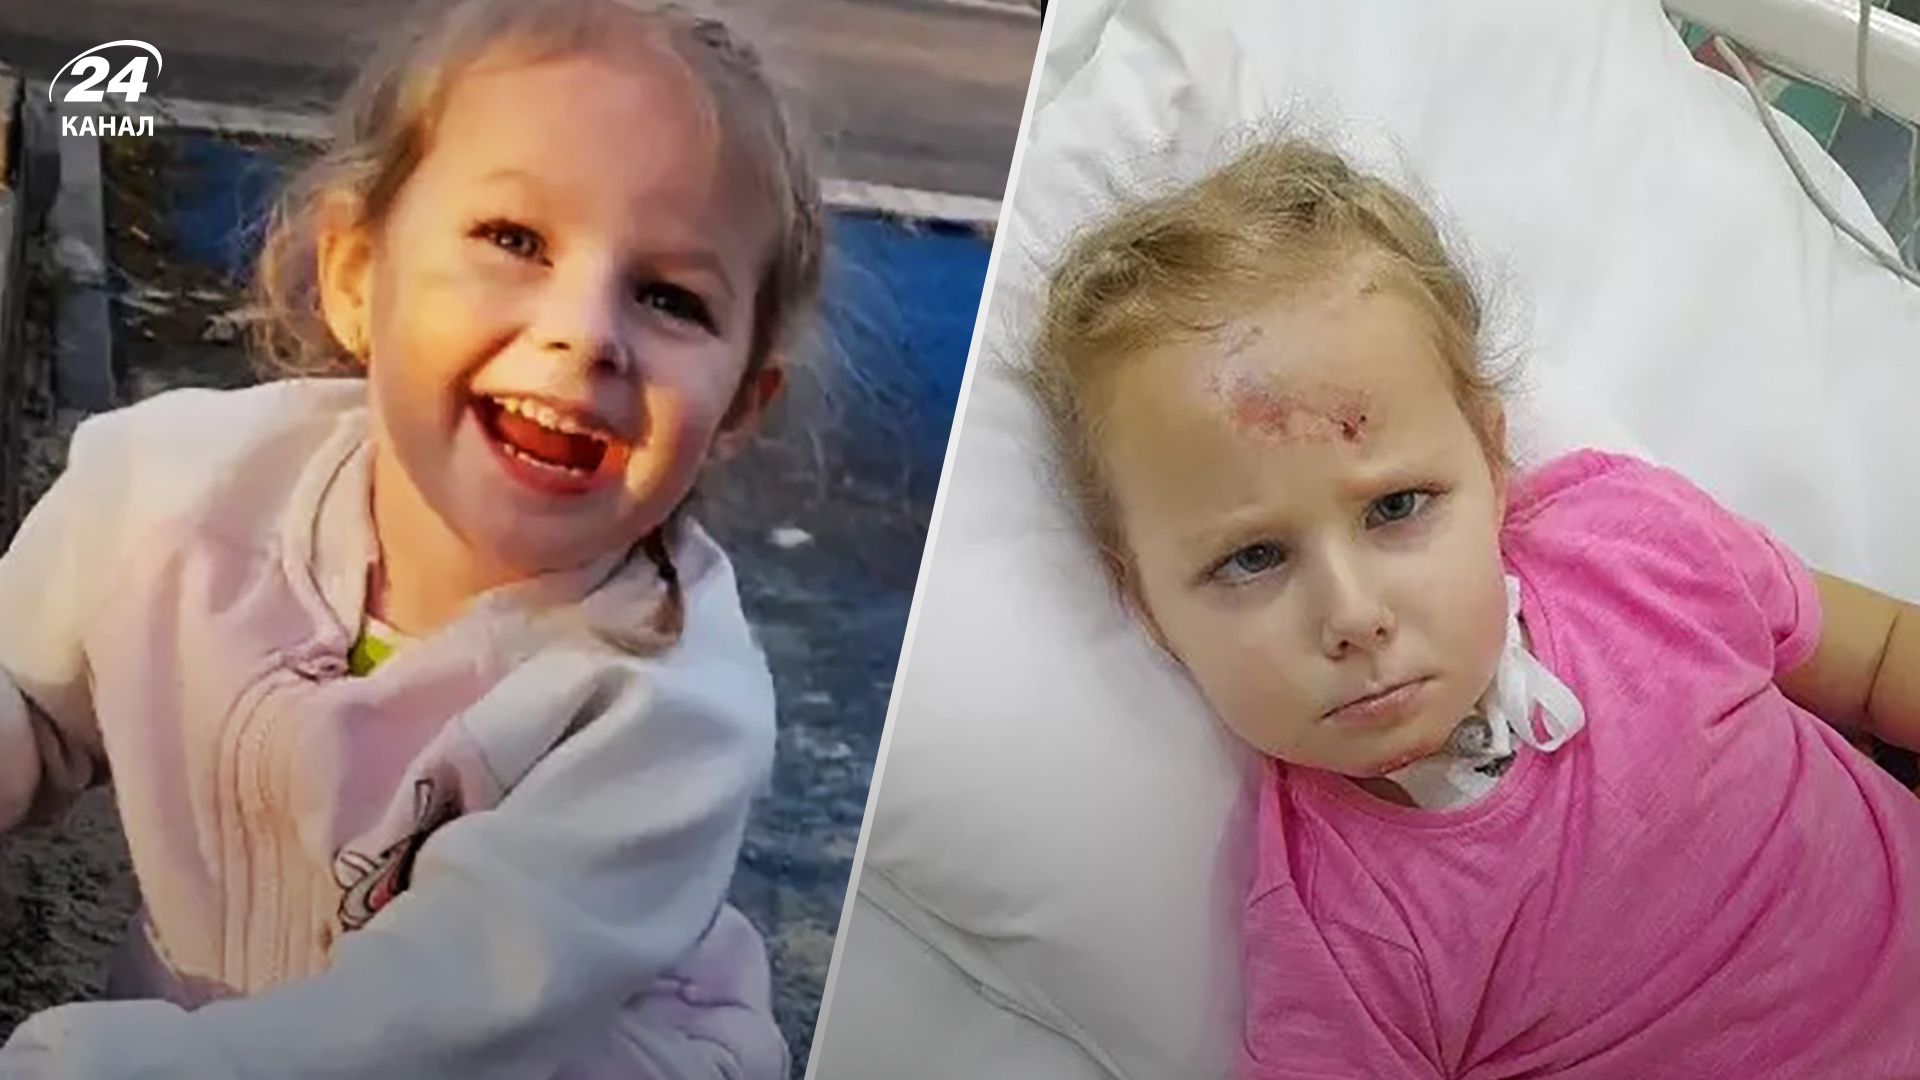 4-річна Ксенія Волкова загинула у ДТП у Польщі - що відомо про трагедію